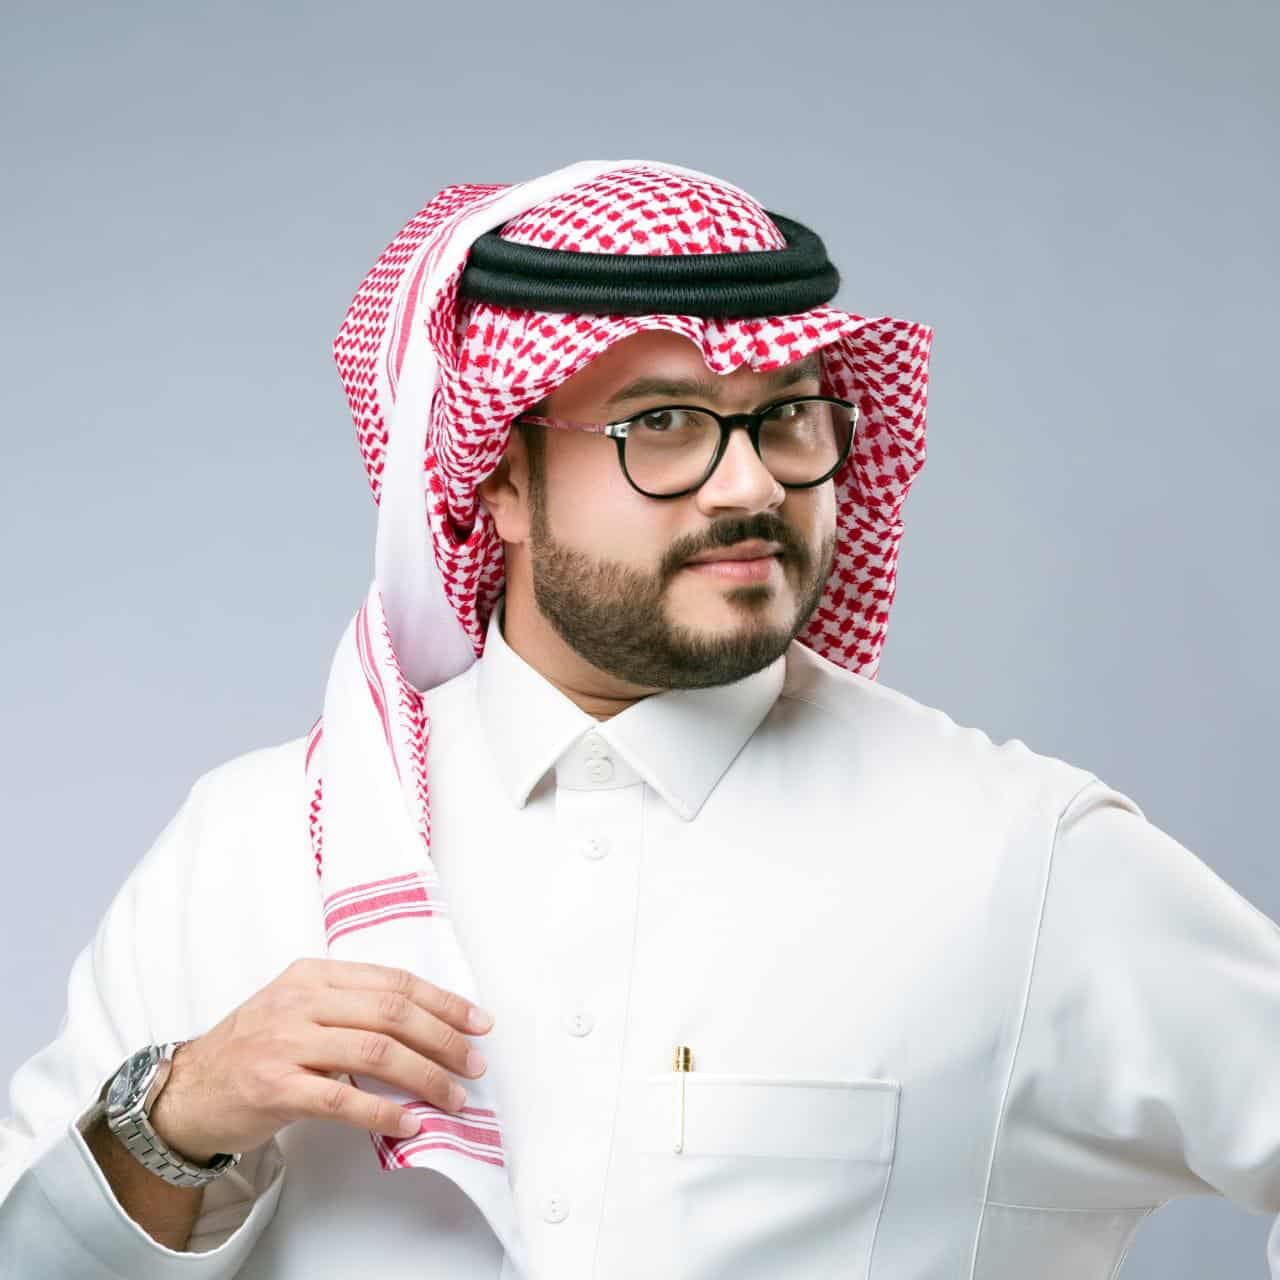 ما هي طقوس الفنان فيصل عبد الكريم الرمضانية؟